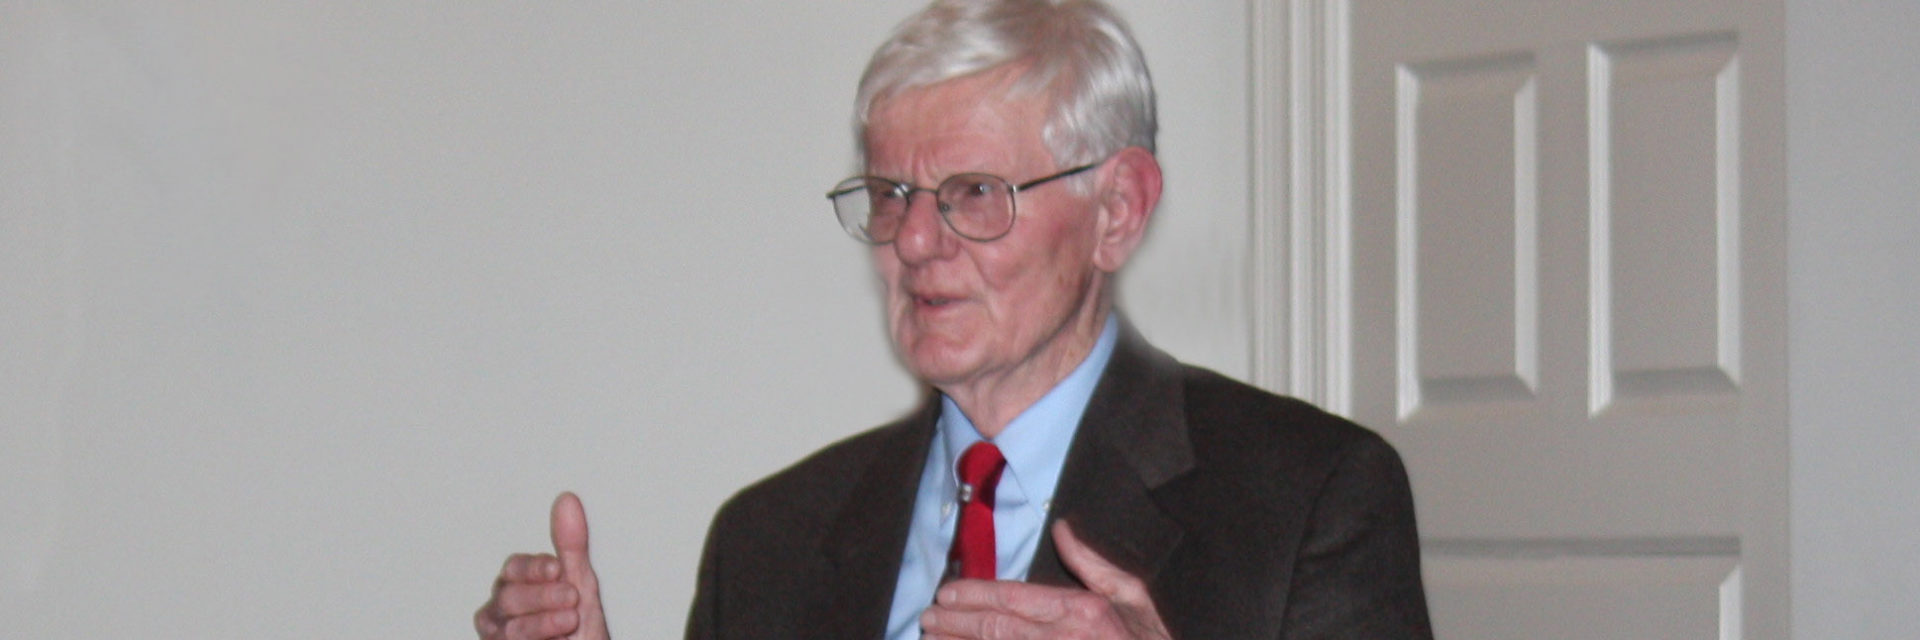 Author Gordon Wood